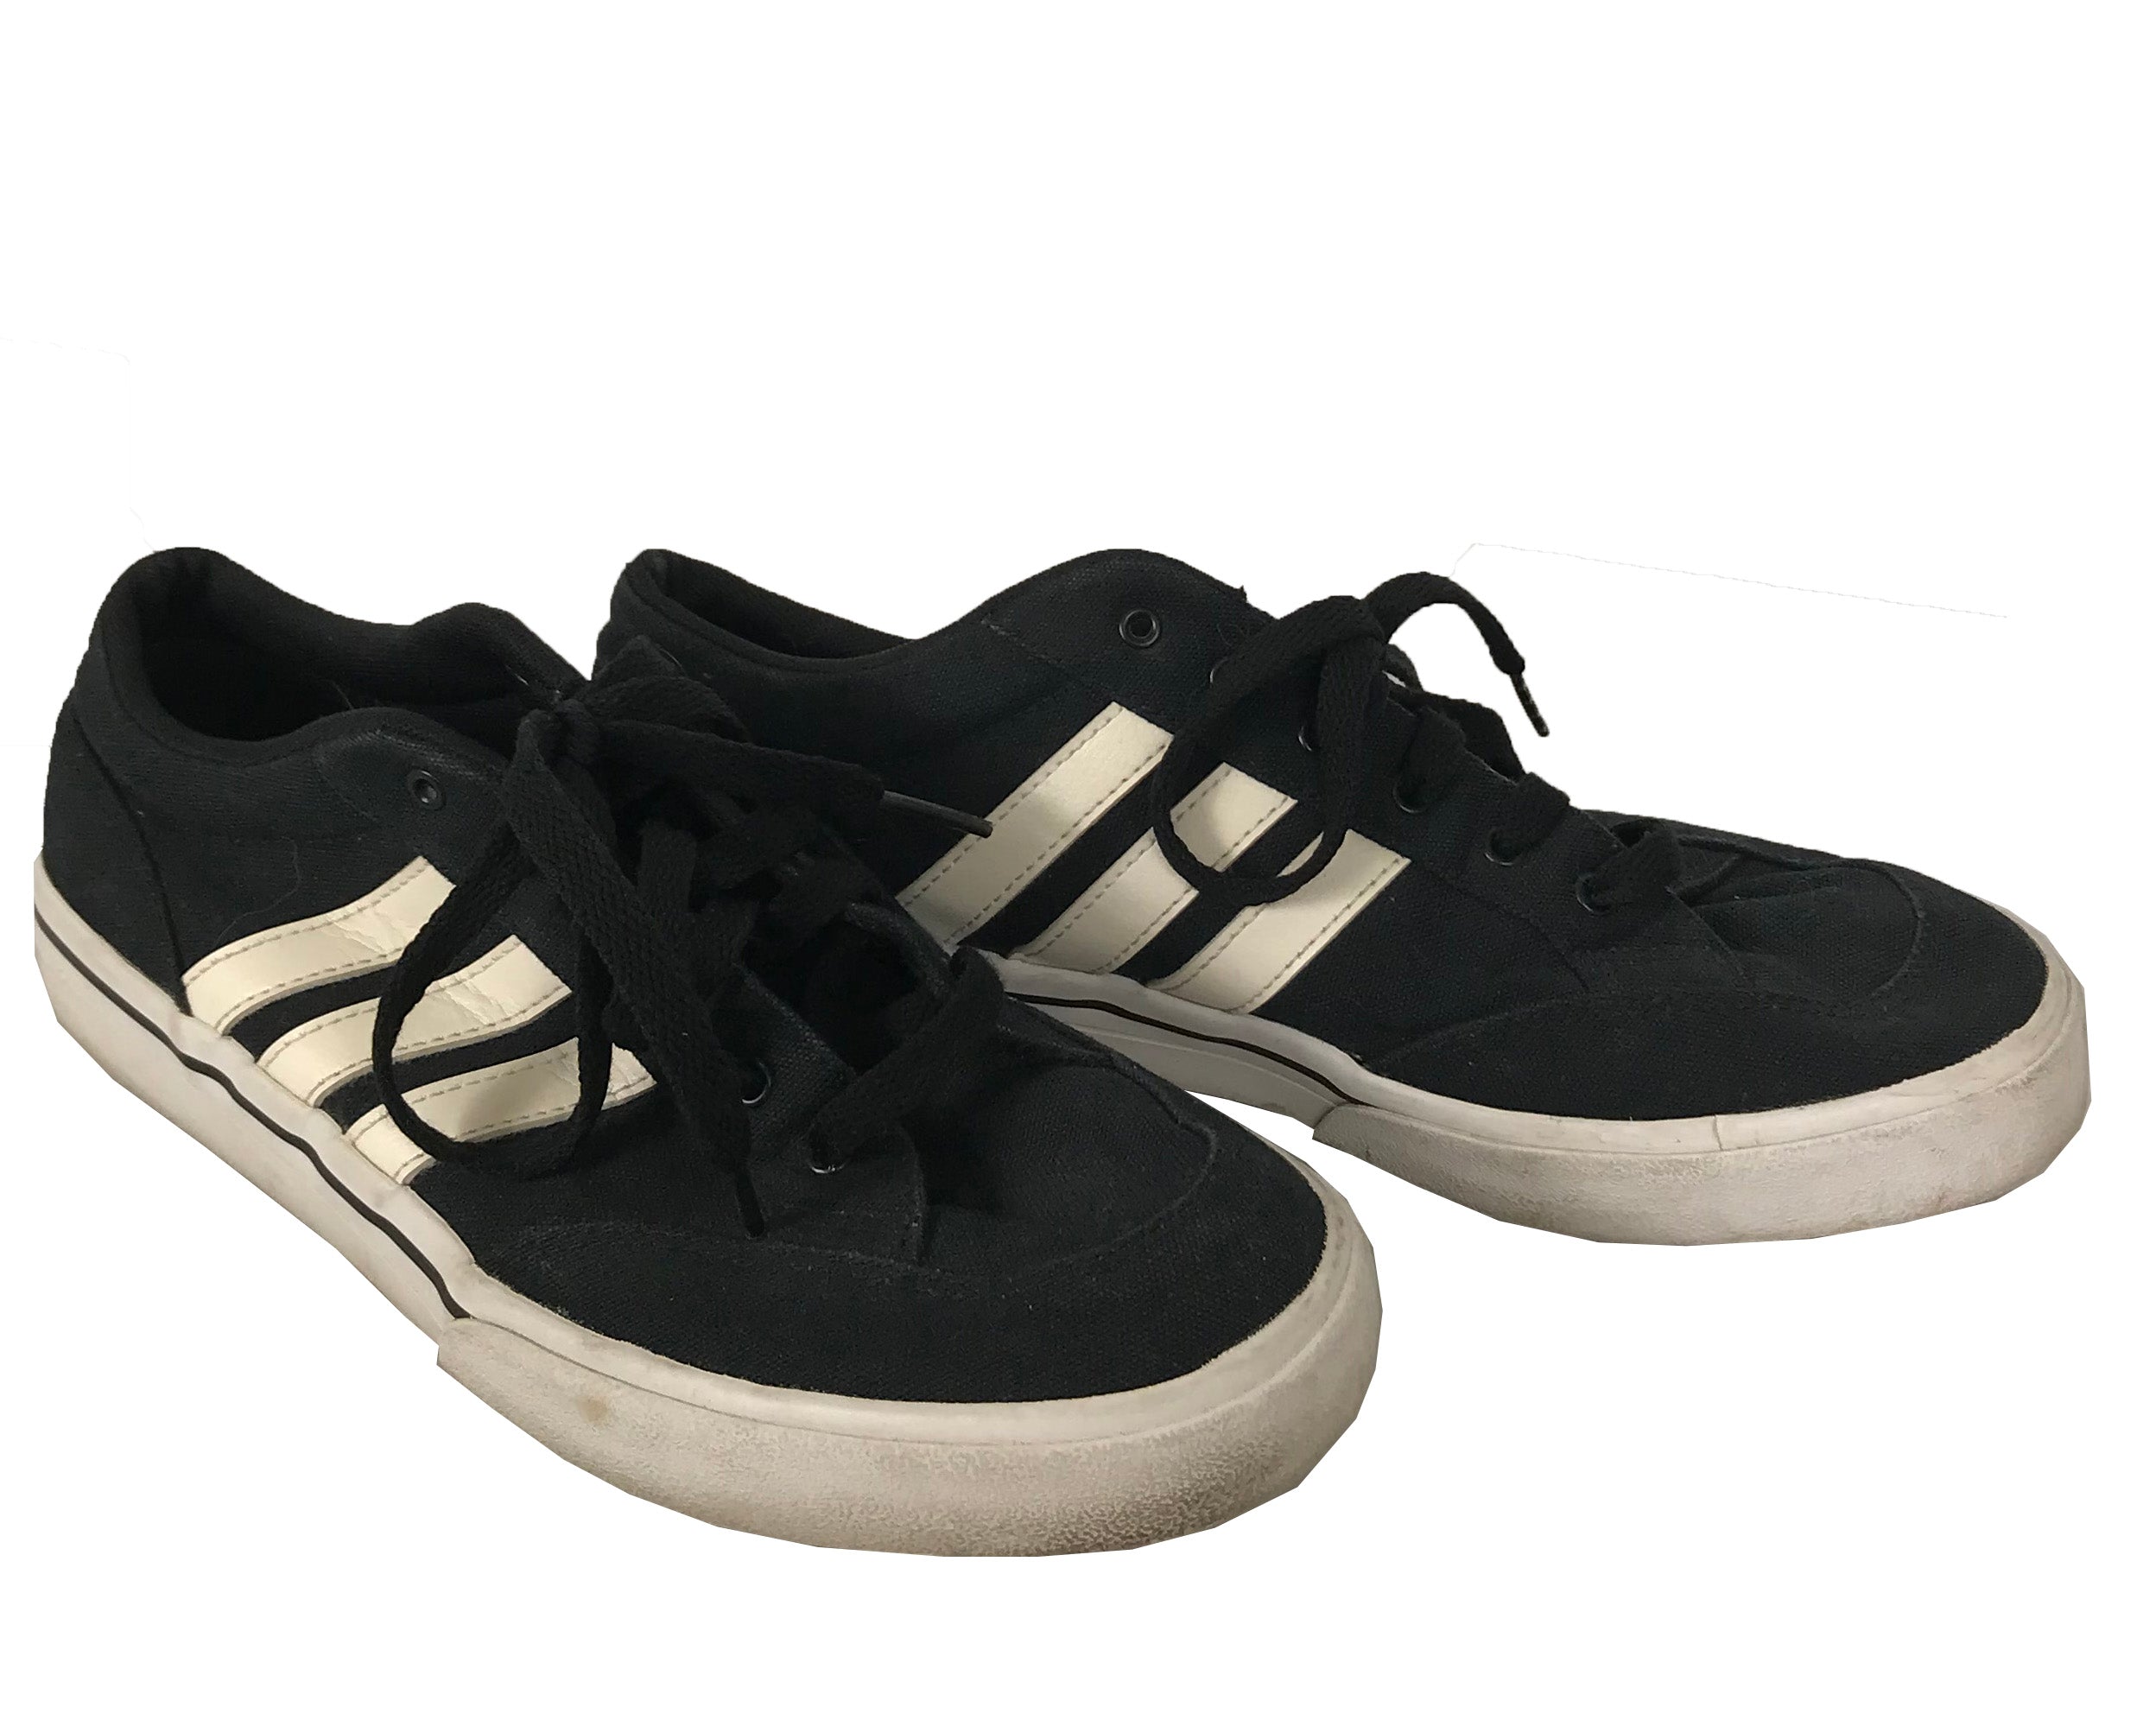 Adidas Black & White Sneakers Men's Size 9